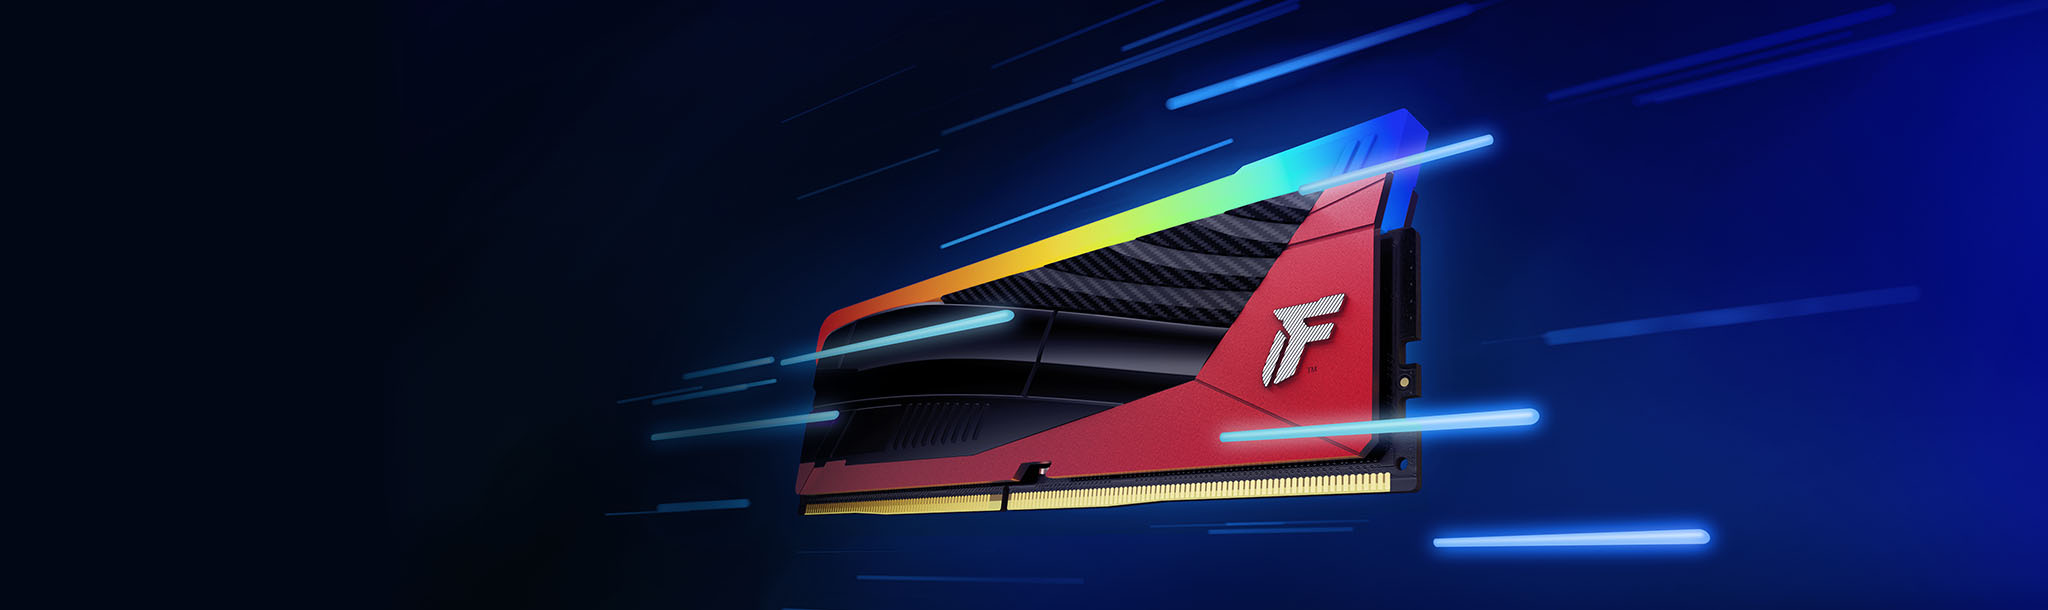 속도를 상징하는 모션 블러 줄무늬로 둘러싸인 Kingston FURY Renegade DDR5 RGB 한정판 모듈